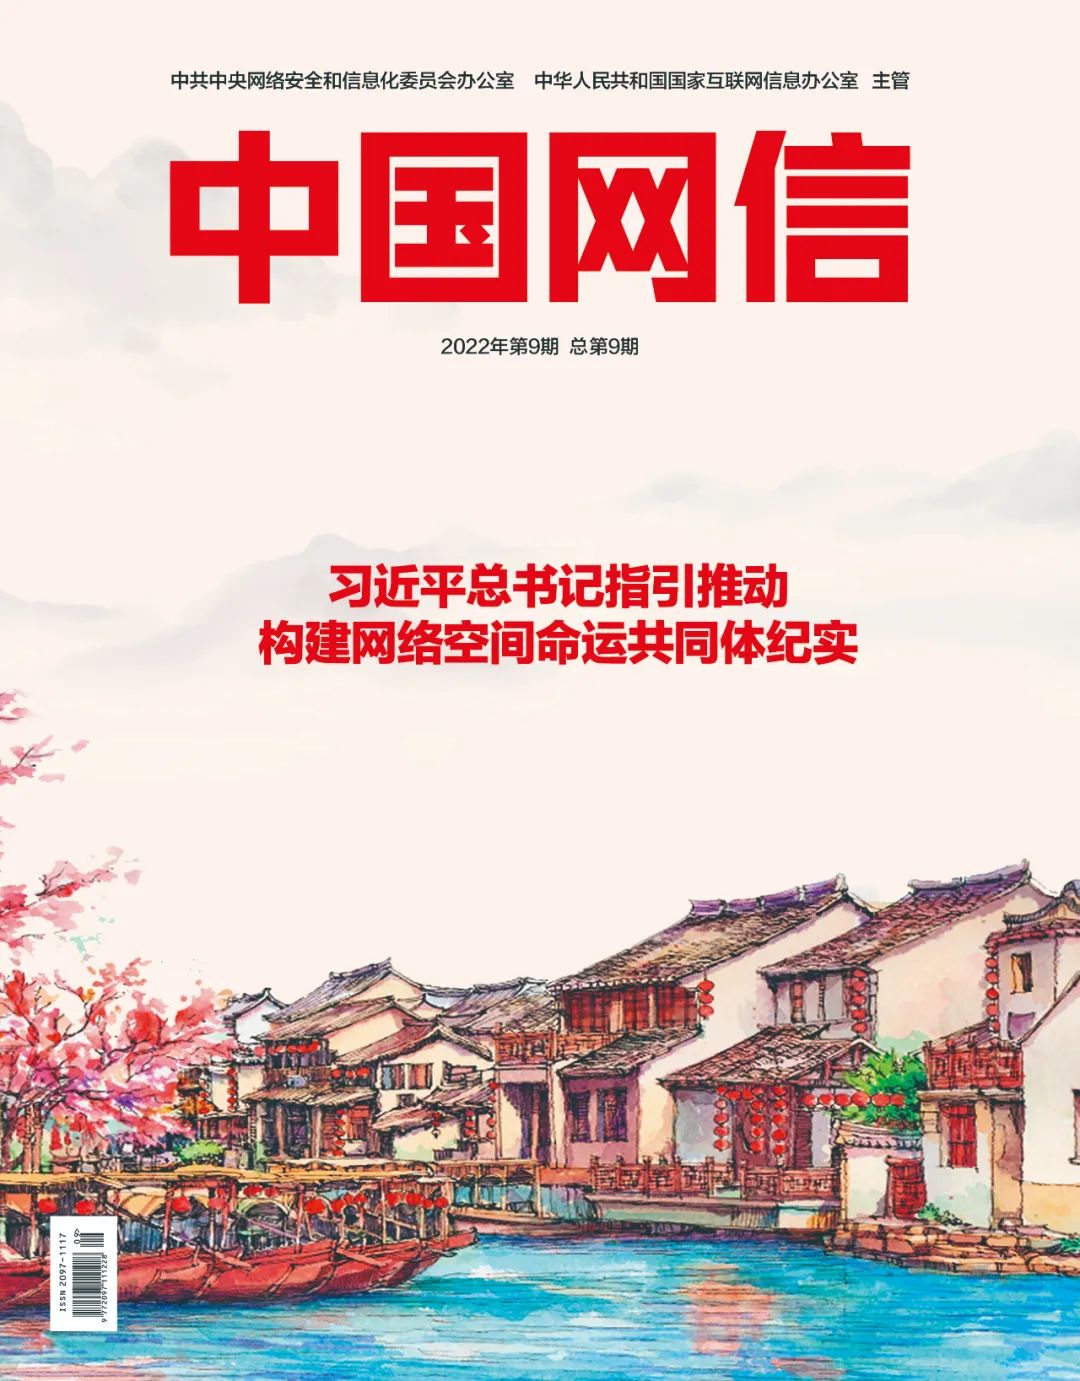 《中国网信》杂志发表《习近平总书记指引推动构建网络空间命运共同体纪实》